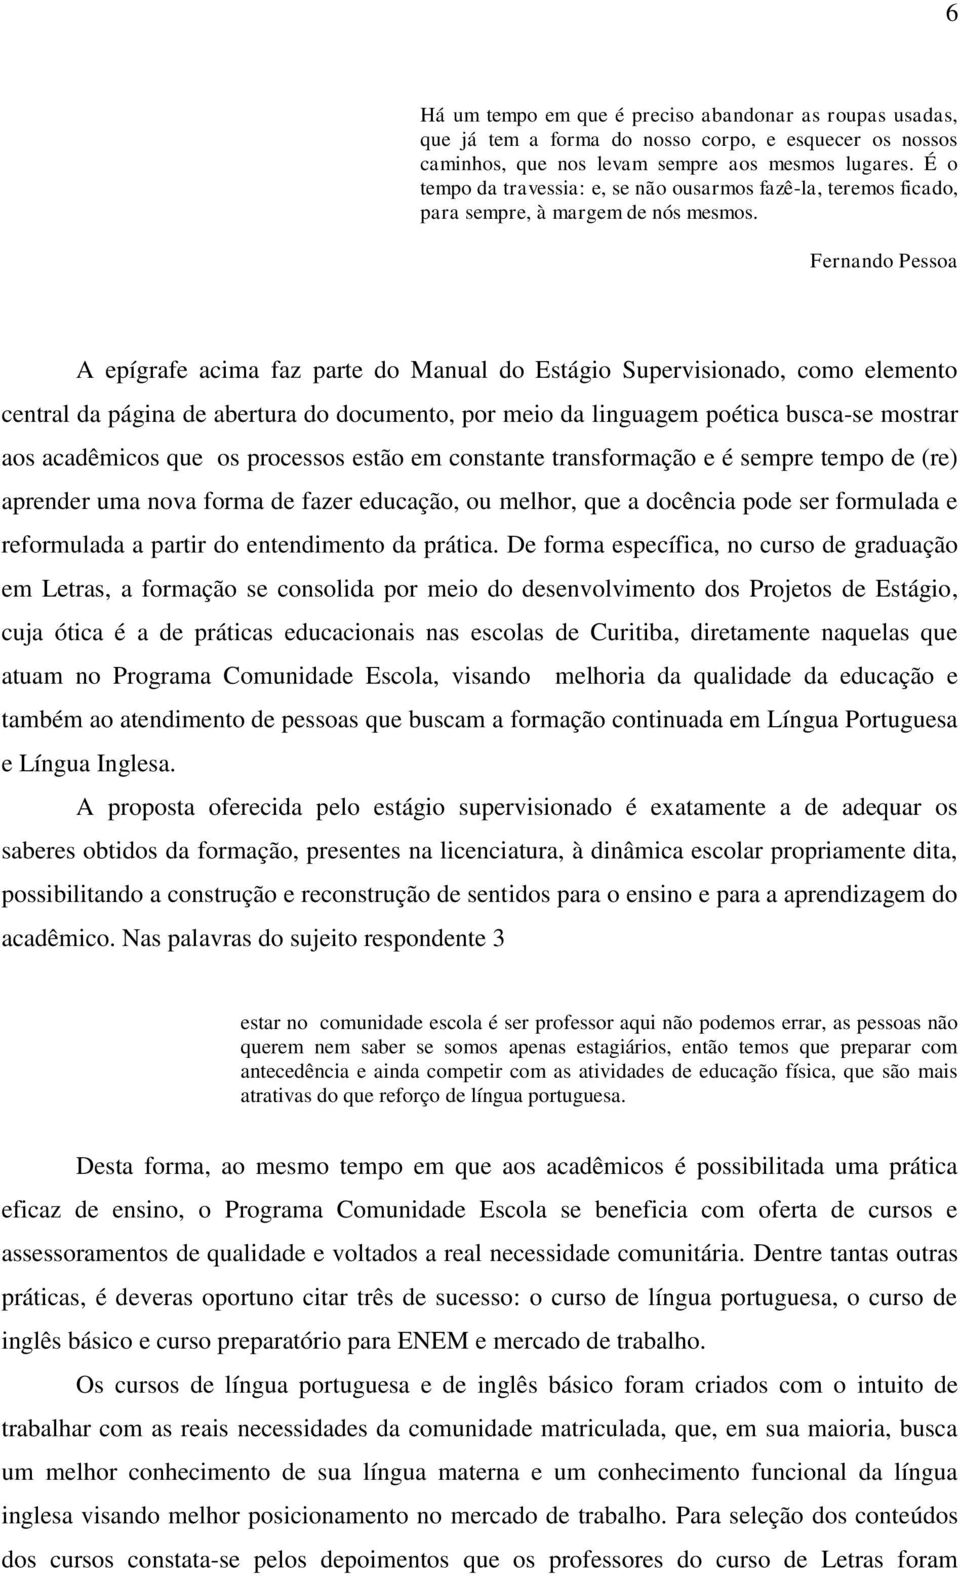 Fernando Pessoa A epígrafe acima faz parte do Manual do Estágio Supervisionado, como elemento central da página de abertura do documento, por meio da linguagem poética busca-se mostrar aos acadêmicos